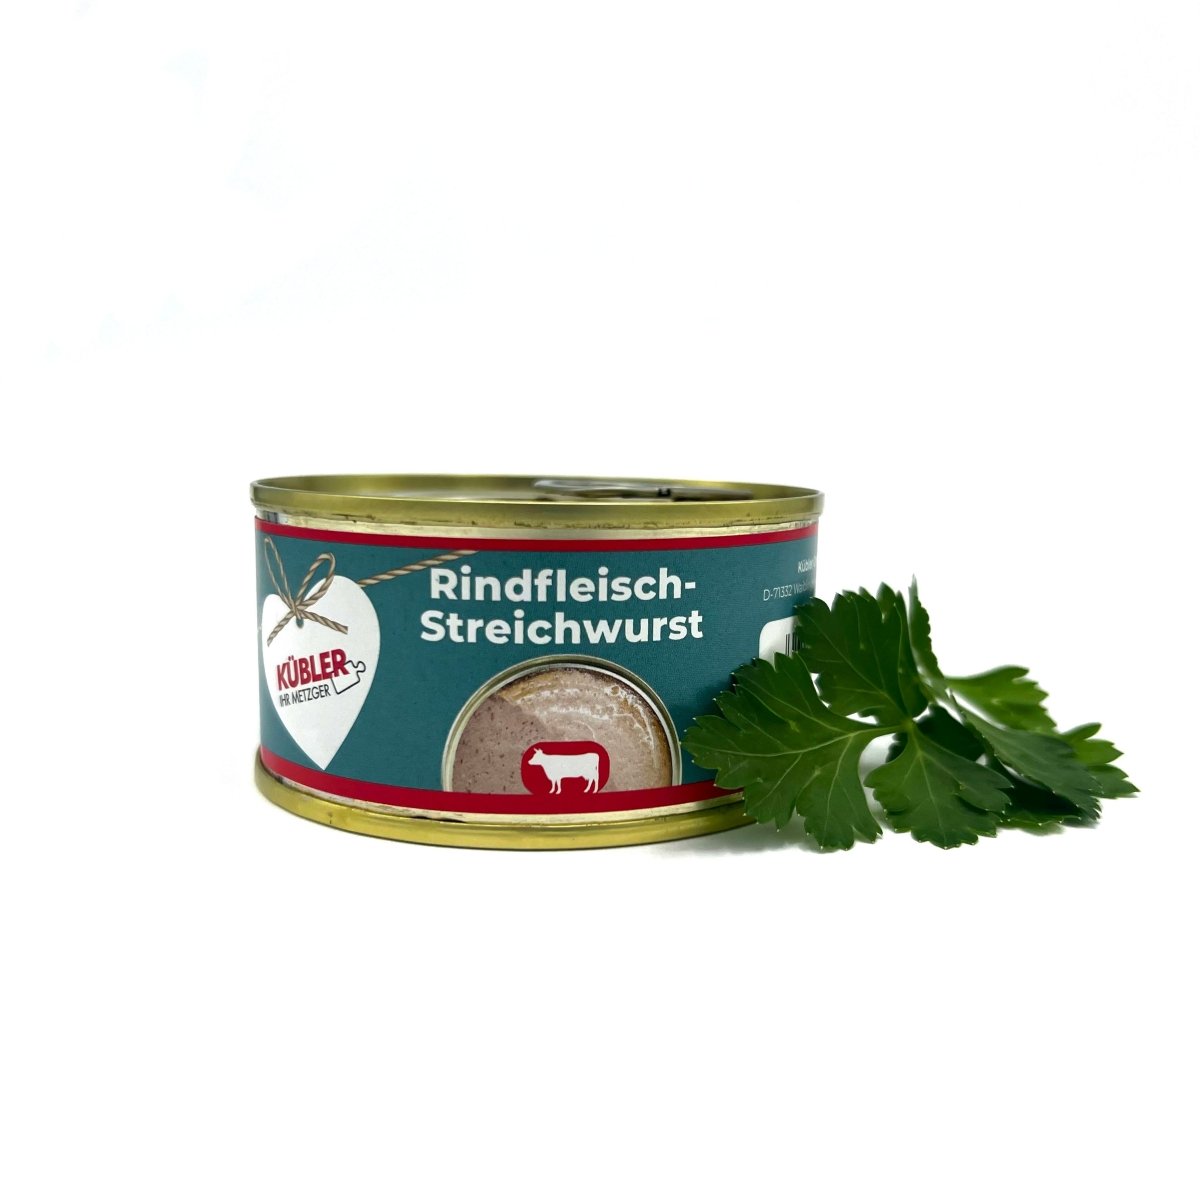 Rindfleisch-Streichwurst 125g Dosen - küblerGo